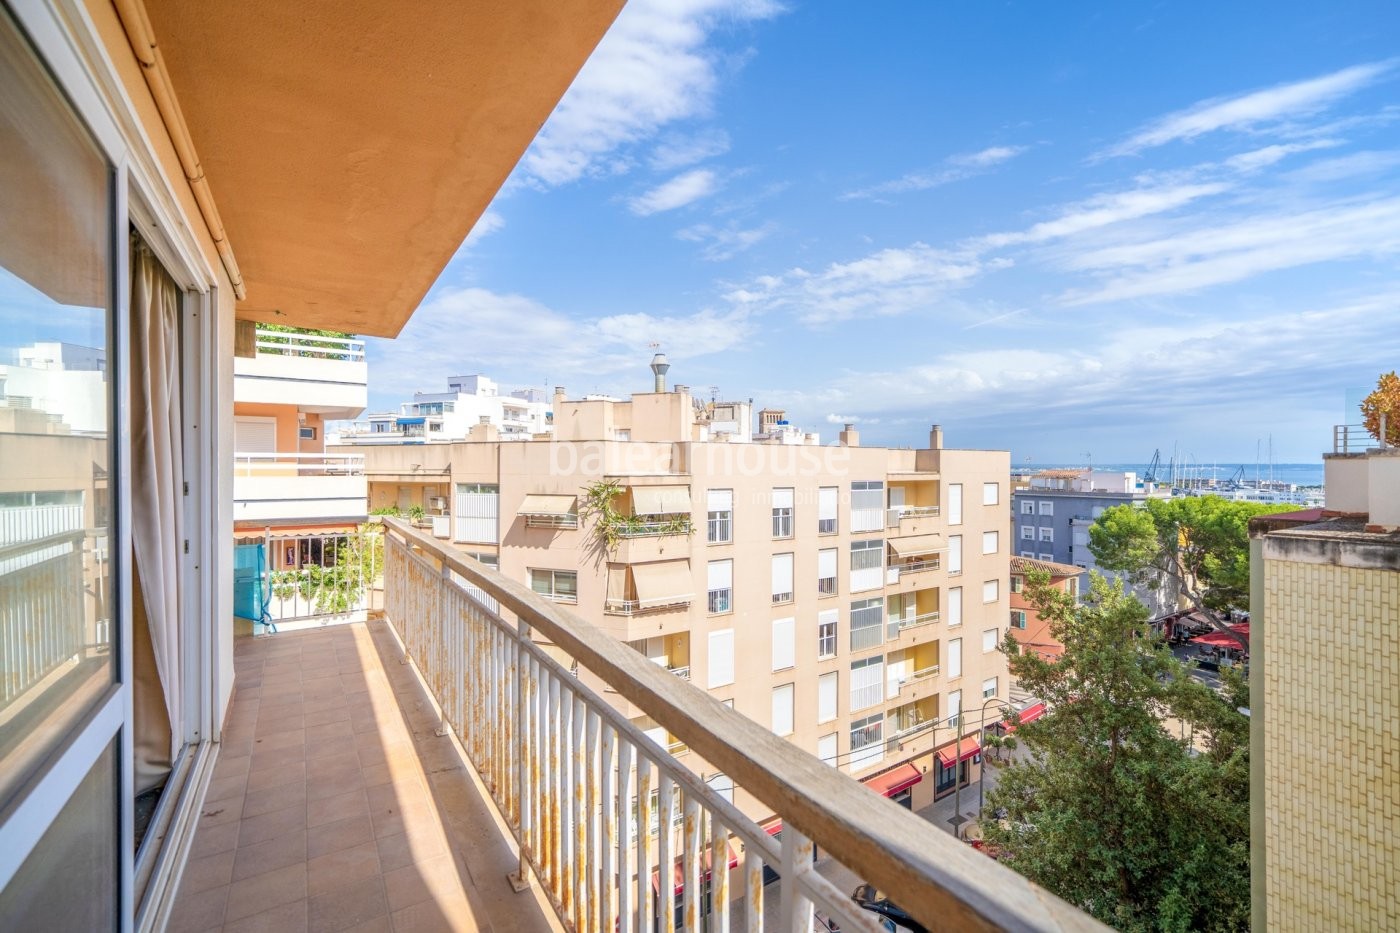 Fantástico piso en el centro de Palma con terraza y excelentes vistas despejadas al mar